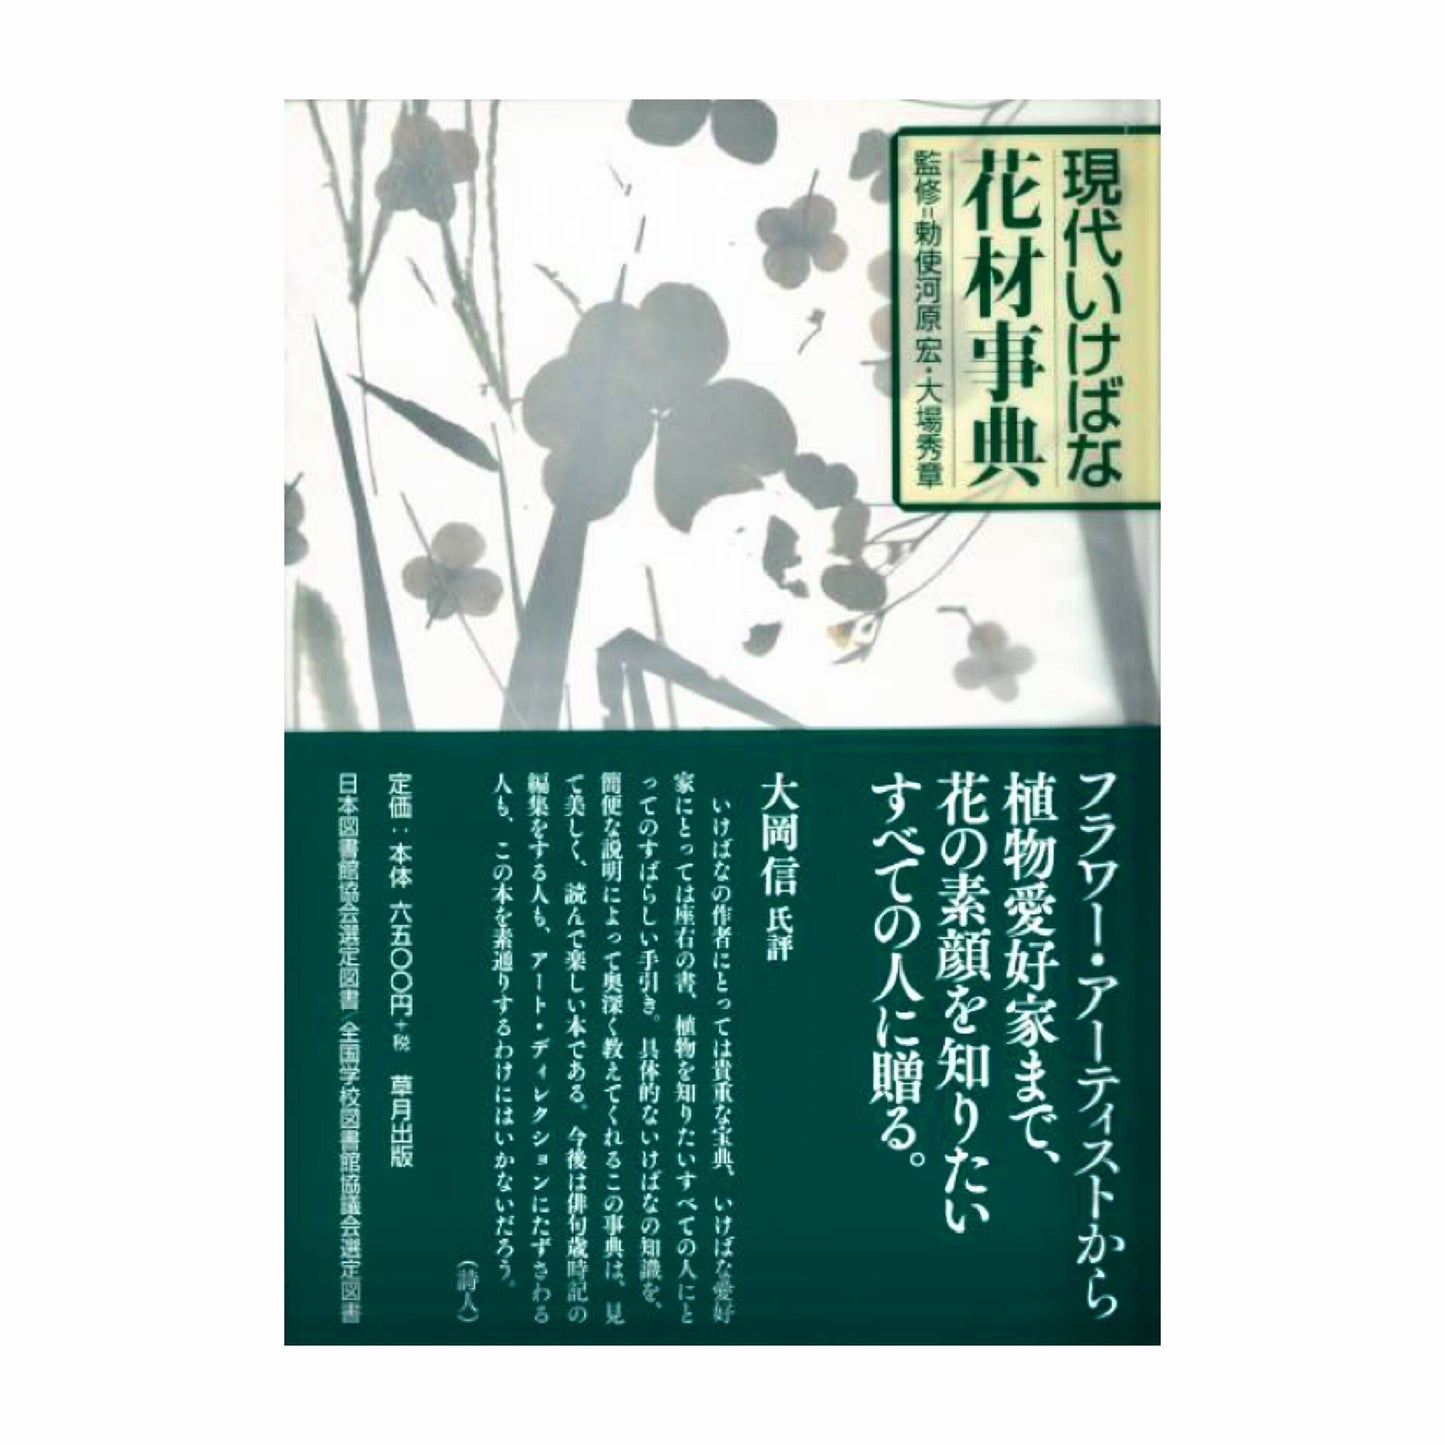 Encyclopedia of modern ikebana flower materials